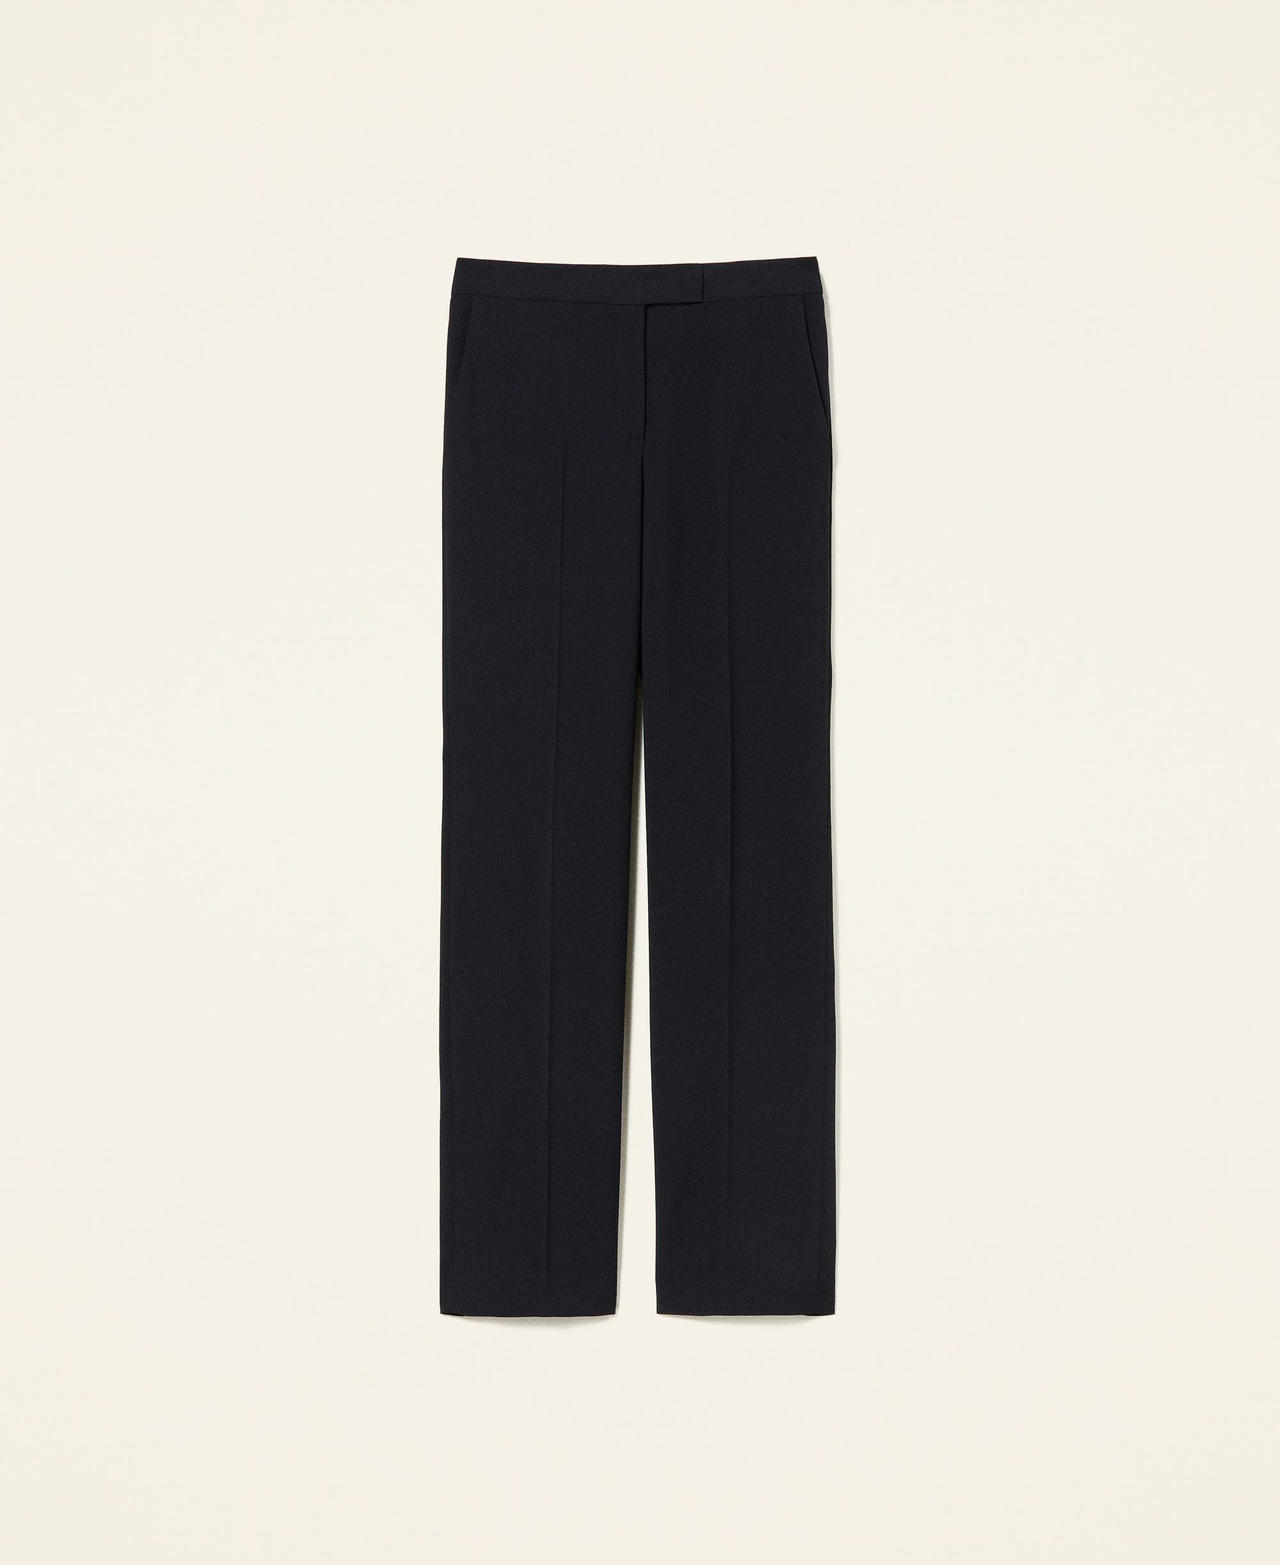 Pantalon taille haute avec poches Noir Femme 221TP2401-0S